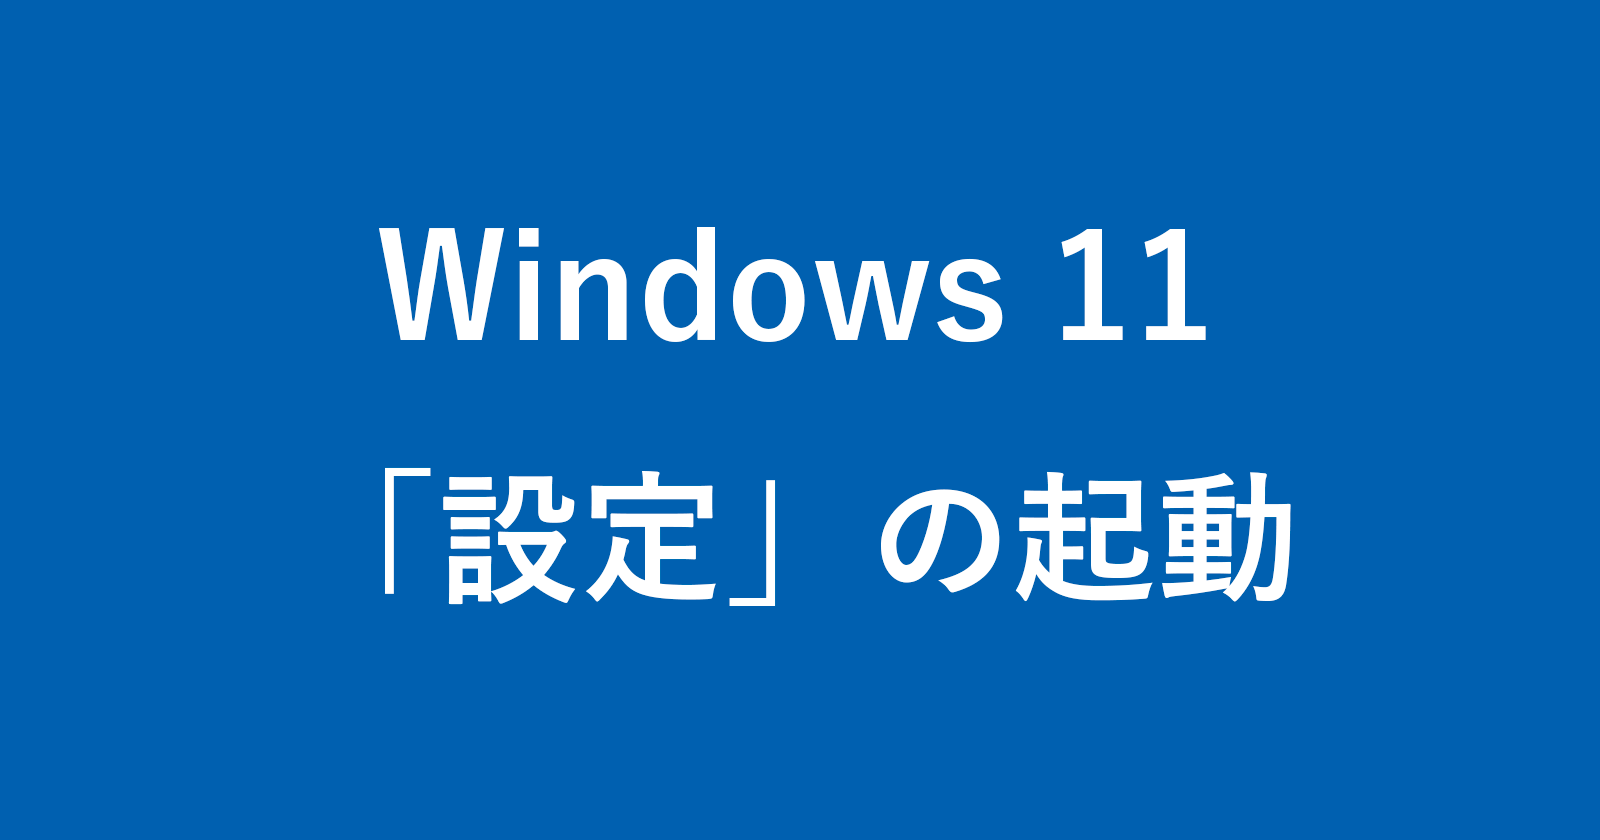 windows 11 open settings